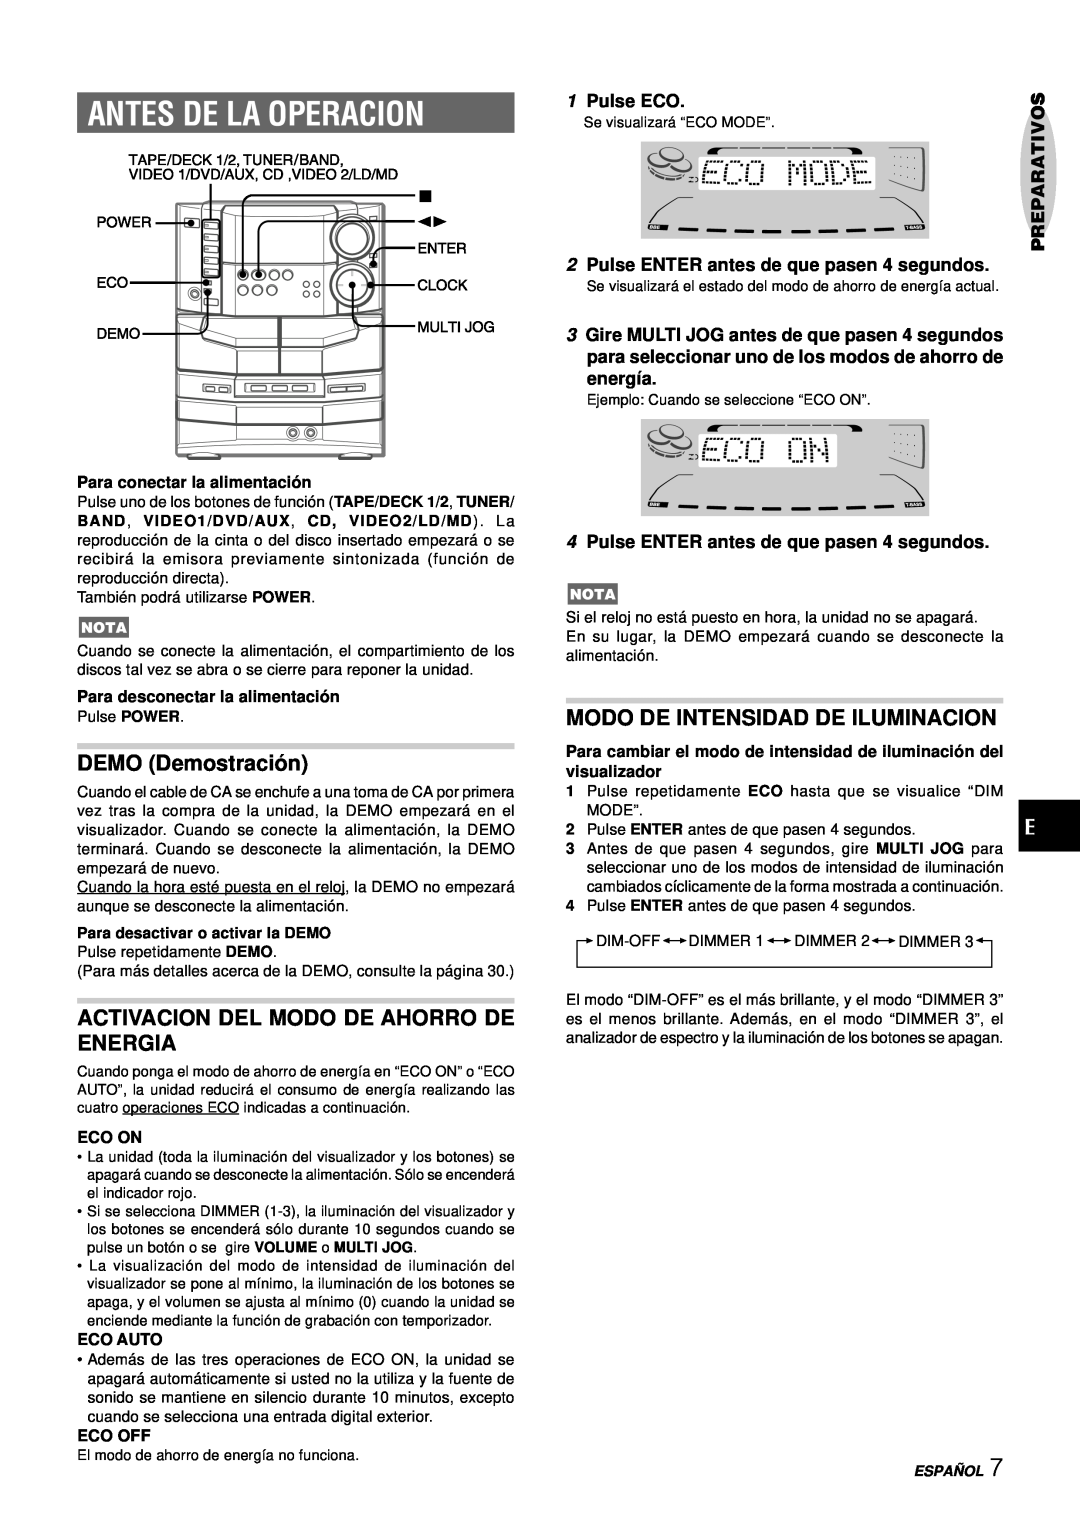 Aiwa NSX-DS8 manual Antes De La Operacion, DEMO Demostració n, Activacion Del Modo De Ahorro De Energia, Pulse ECO, energía 